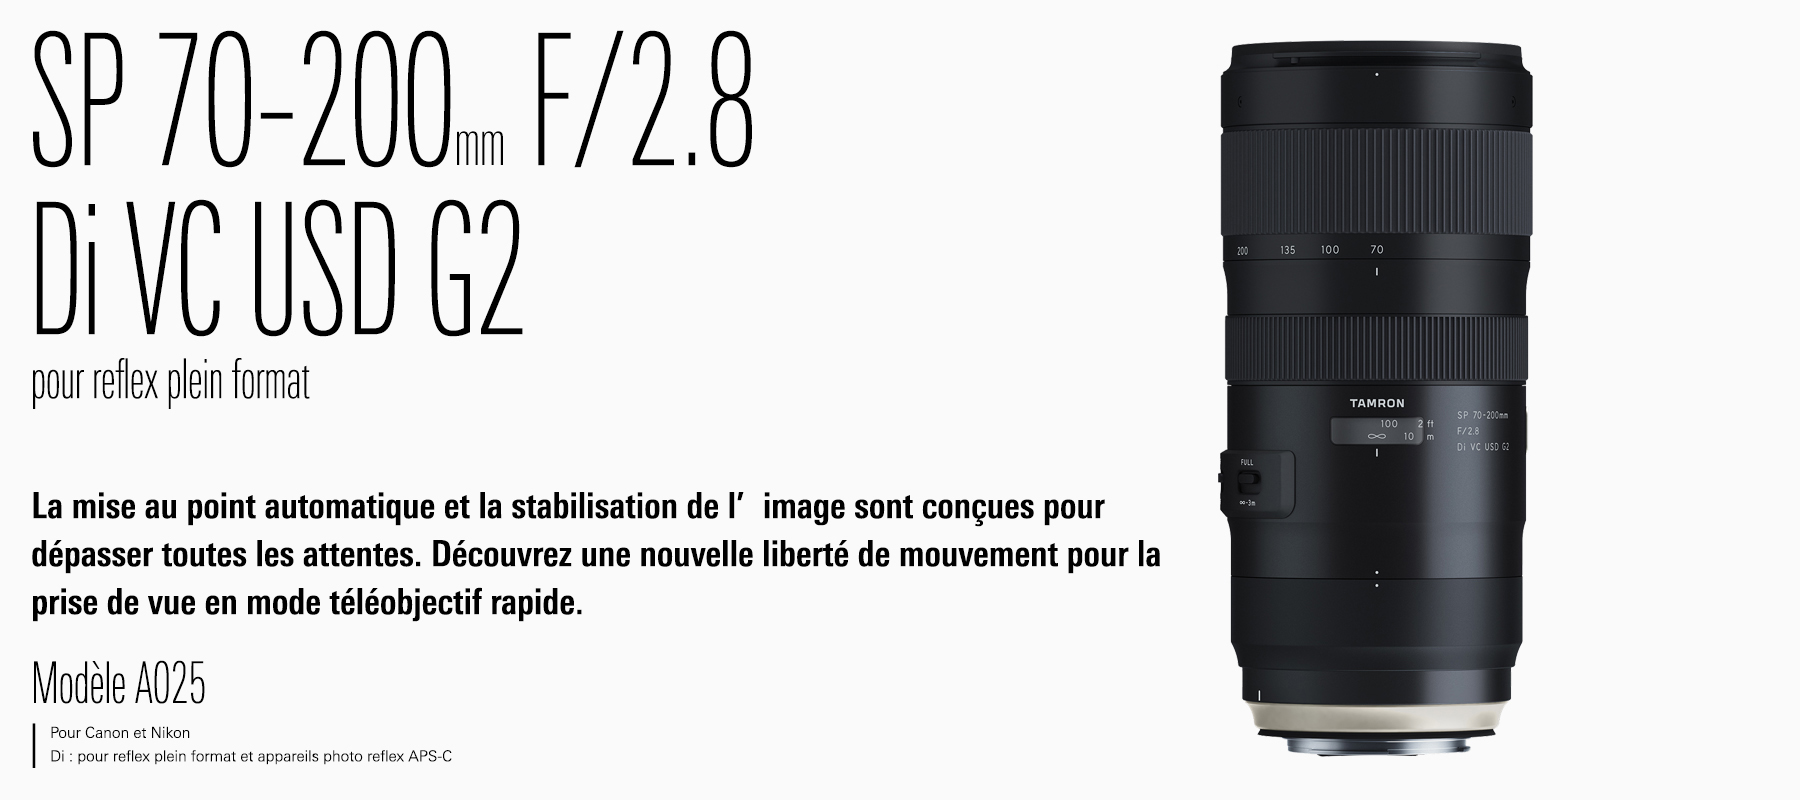 SP 70-200mm F/2.8 Di VC USD G2